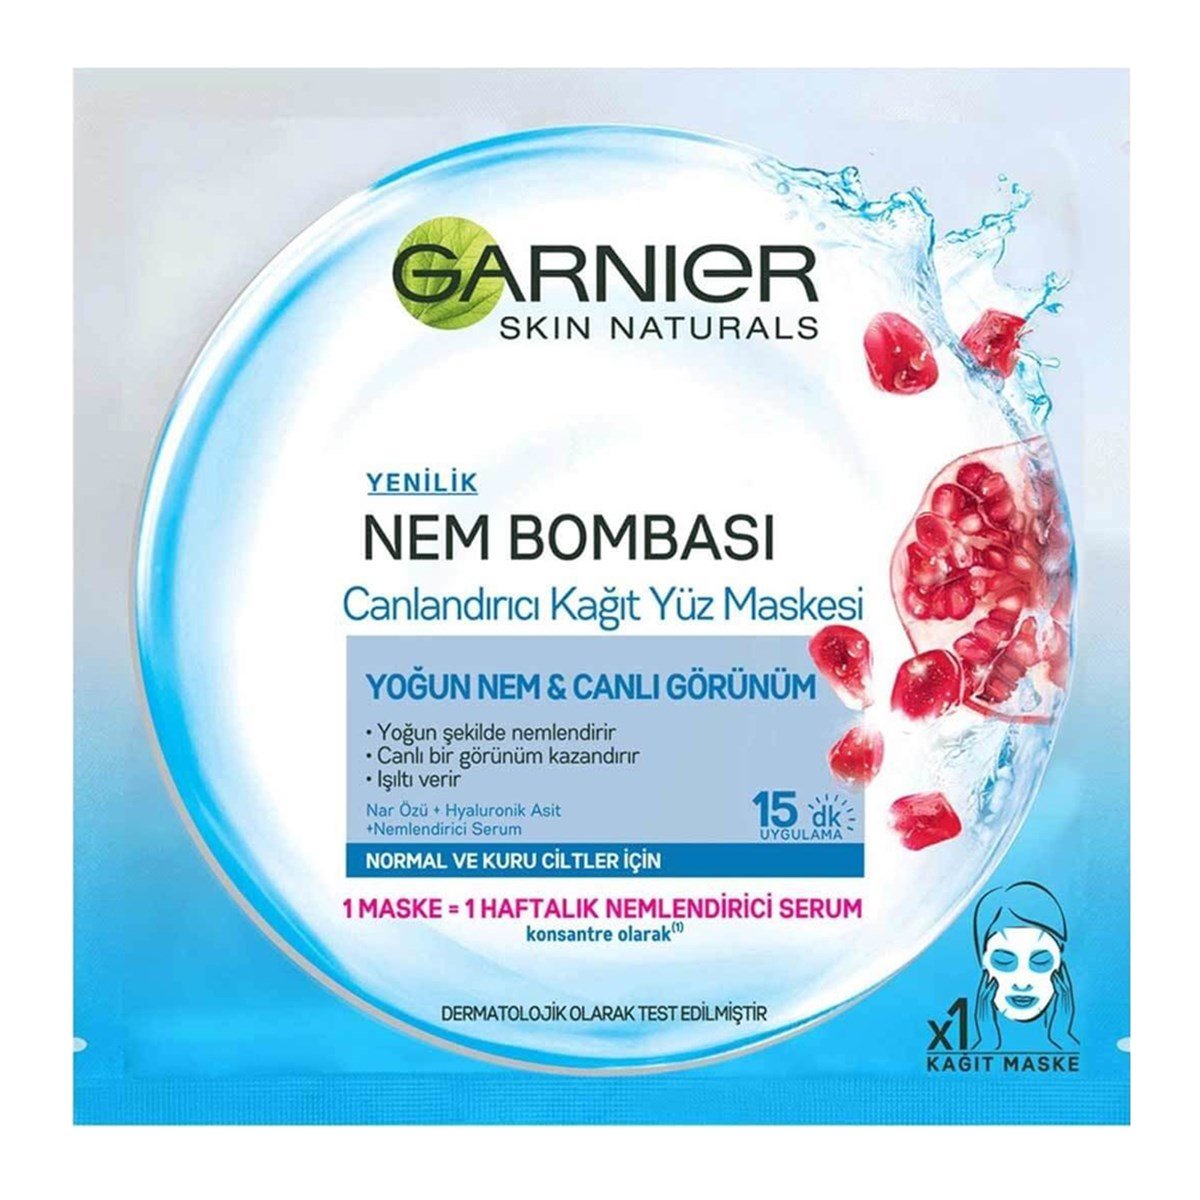 Garnier Nem Bombası Canlandırıcı Kağıt Yüz Maskesi / Normal ve Kuru Ciltler  - Platin